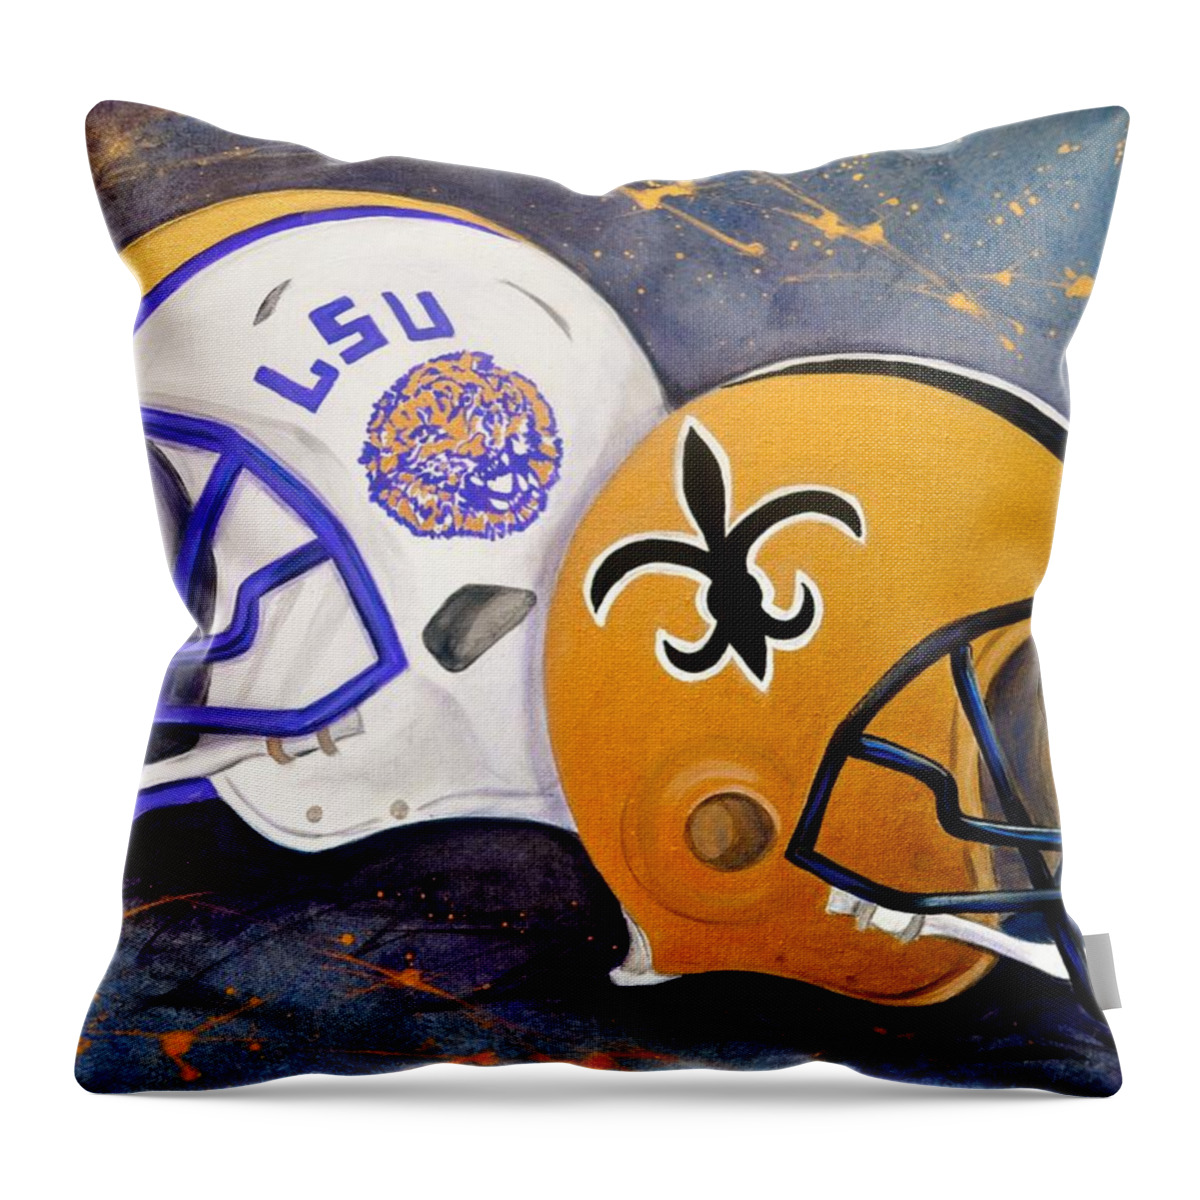 Louisiana Fan Throw Pillow featuring the painting Louisiana Fan by Debi Starr